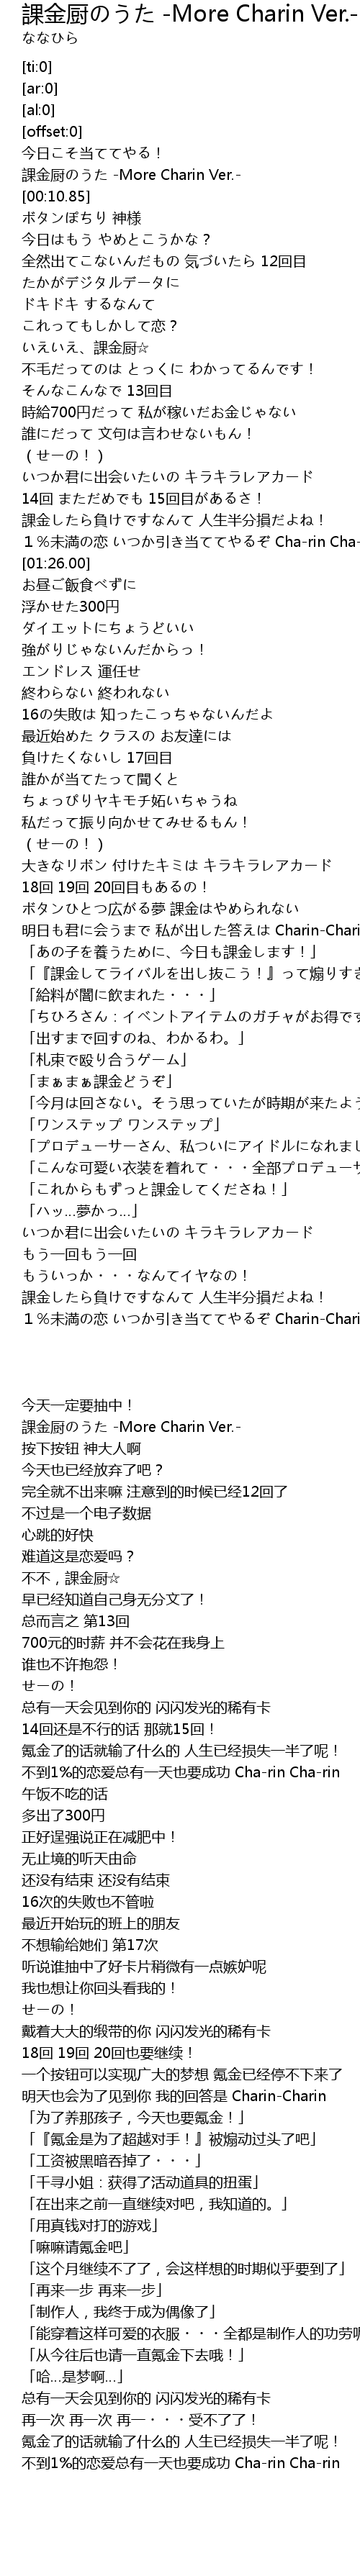 課金厨のうた More Charin Ver Ke Jin Chu More Charin Ver Lyrics Follow Lyrics